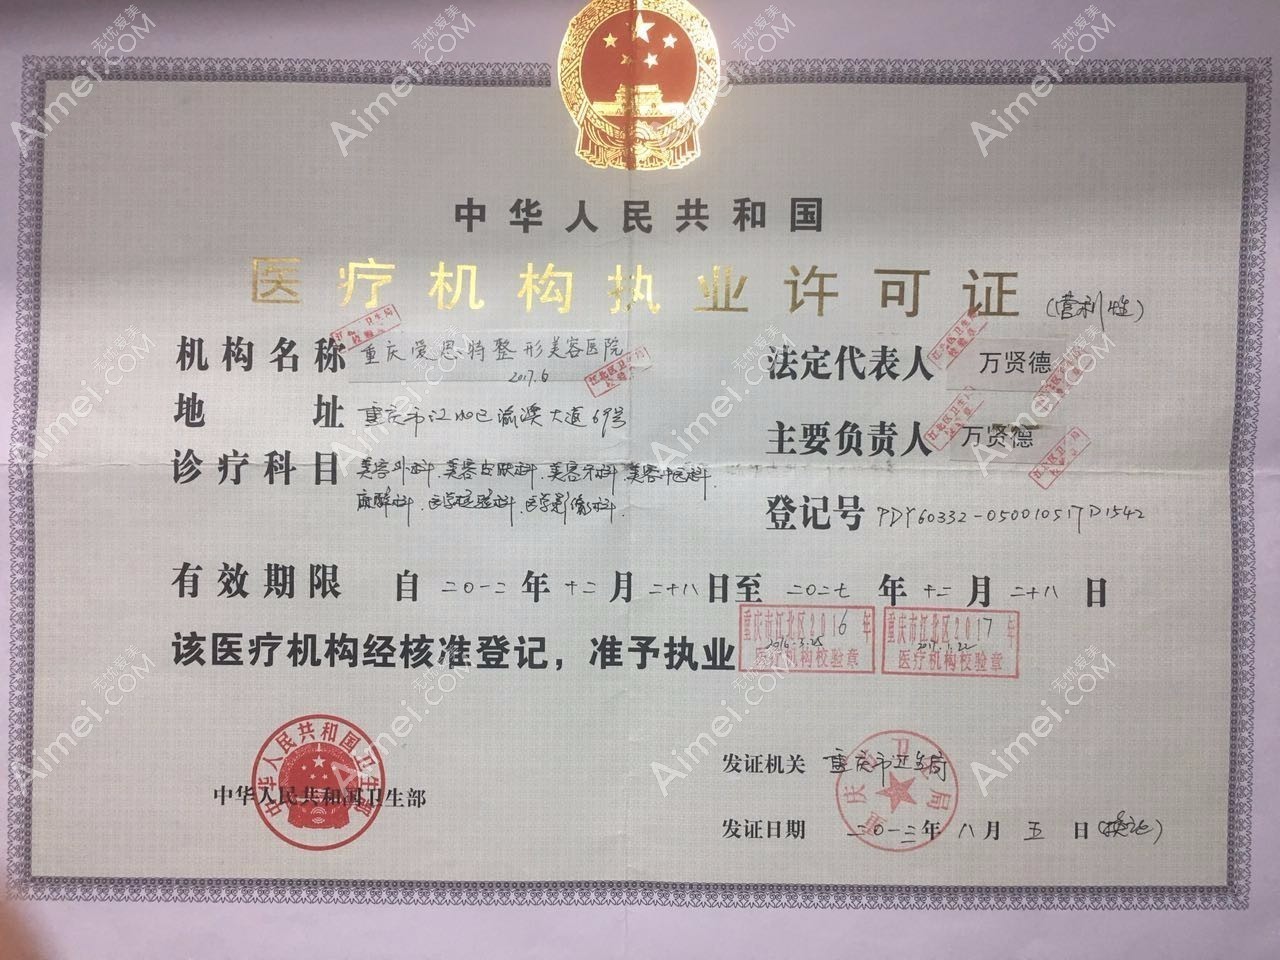 重庆爱思特整形美容医院医疗机构执业许可证